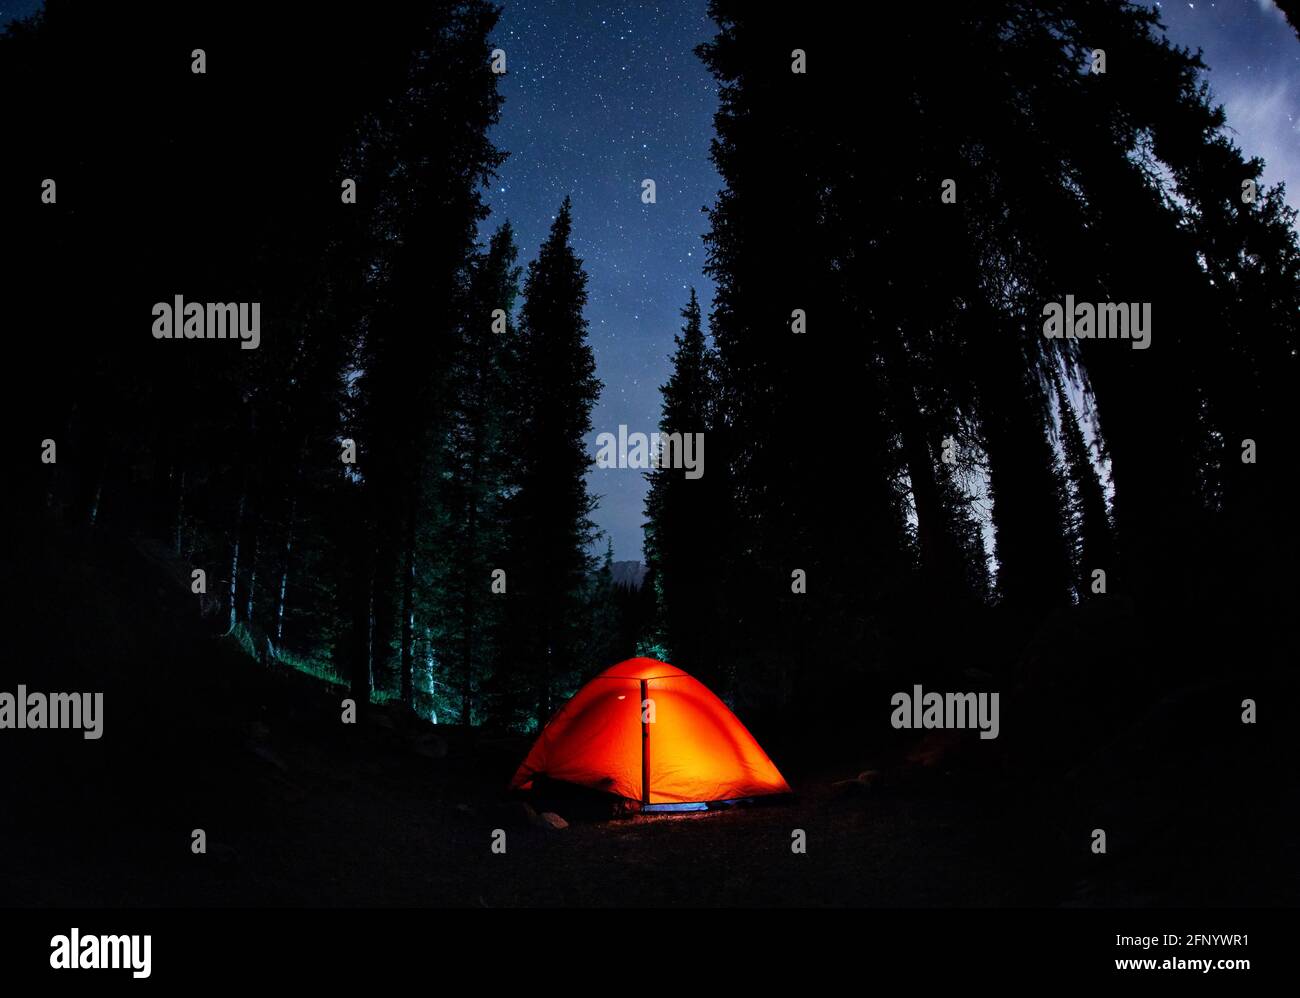 Tenda arancione a campeggiare nella foresta di montagna con abete rosso sotto cielo notturno con stelle Foto Stock